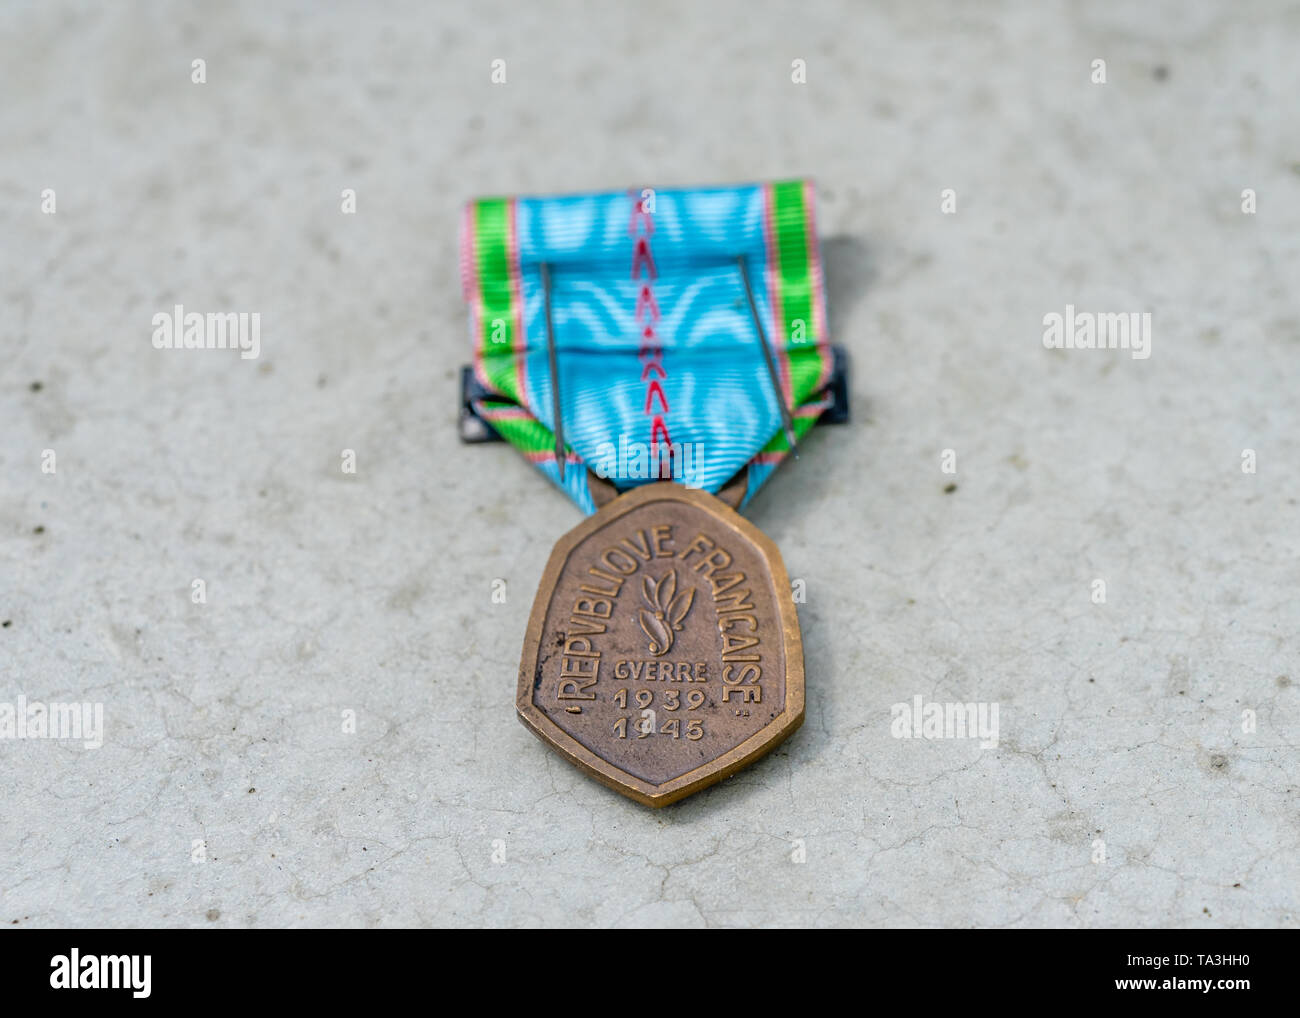 1939-1945 Conmemorativa medalla de bronce de la guerra de liberación (Francia) para los agentes en las filas de la Legión Extranjera Francesa Foto de stock